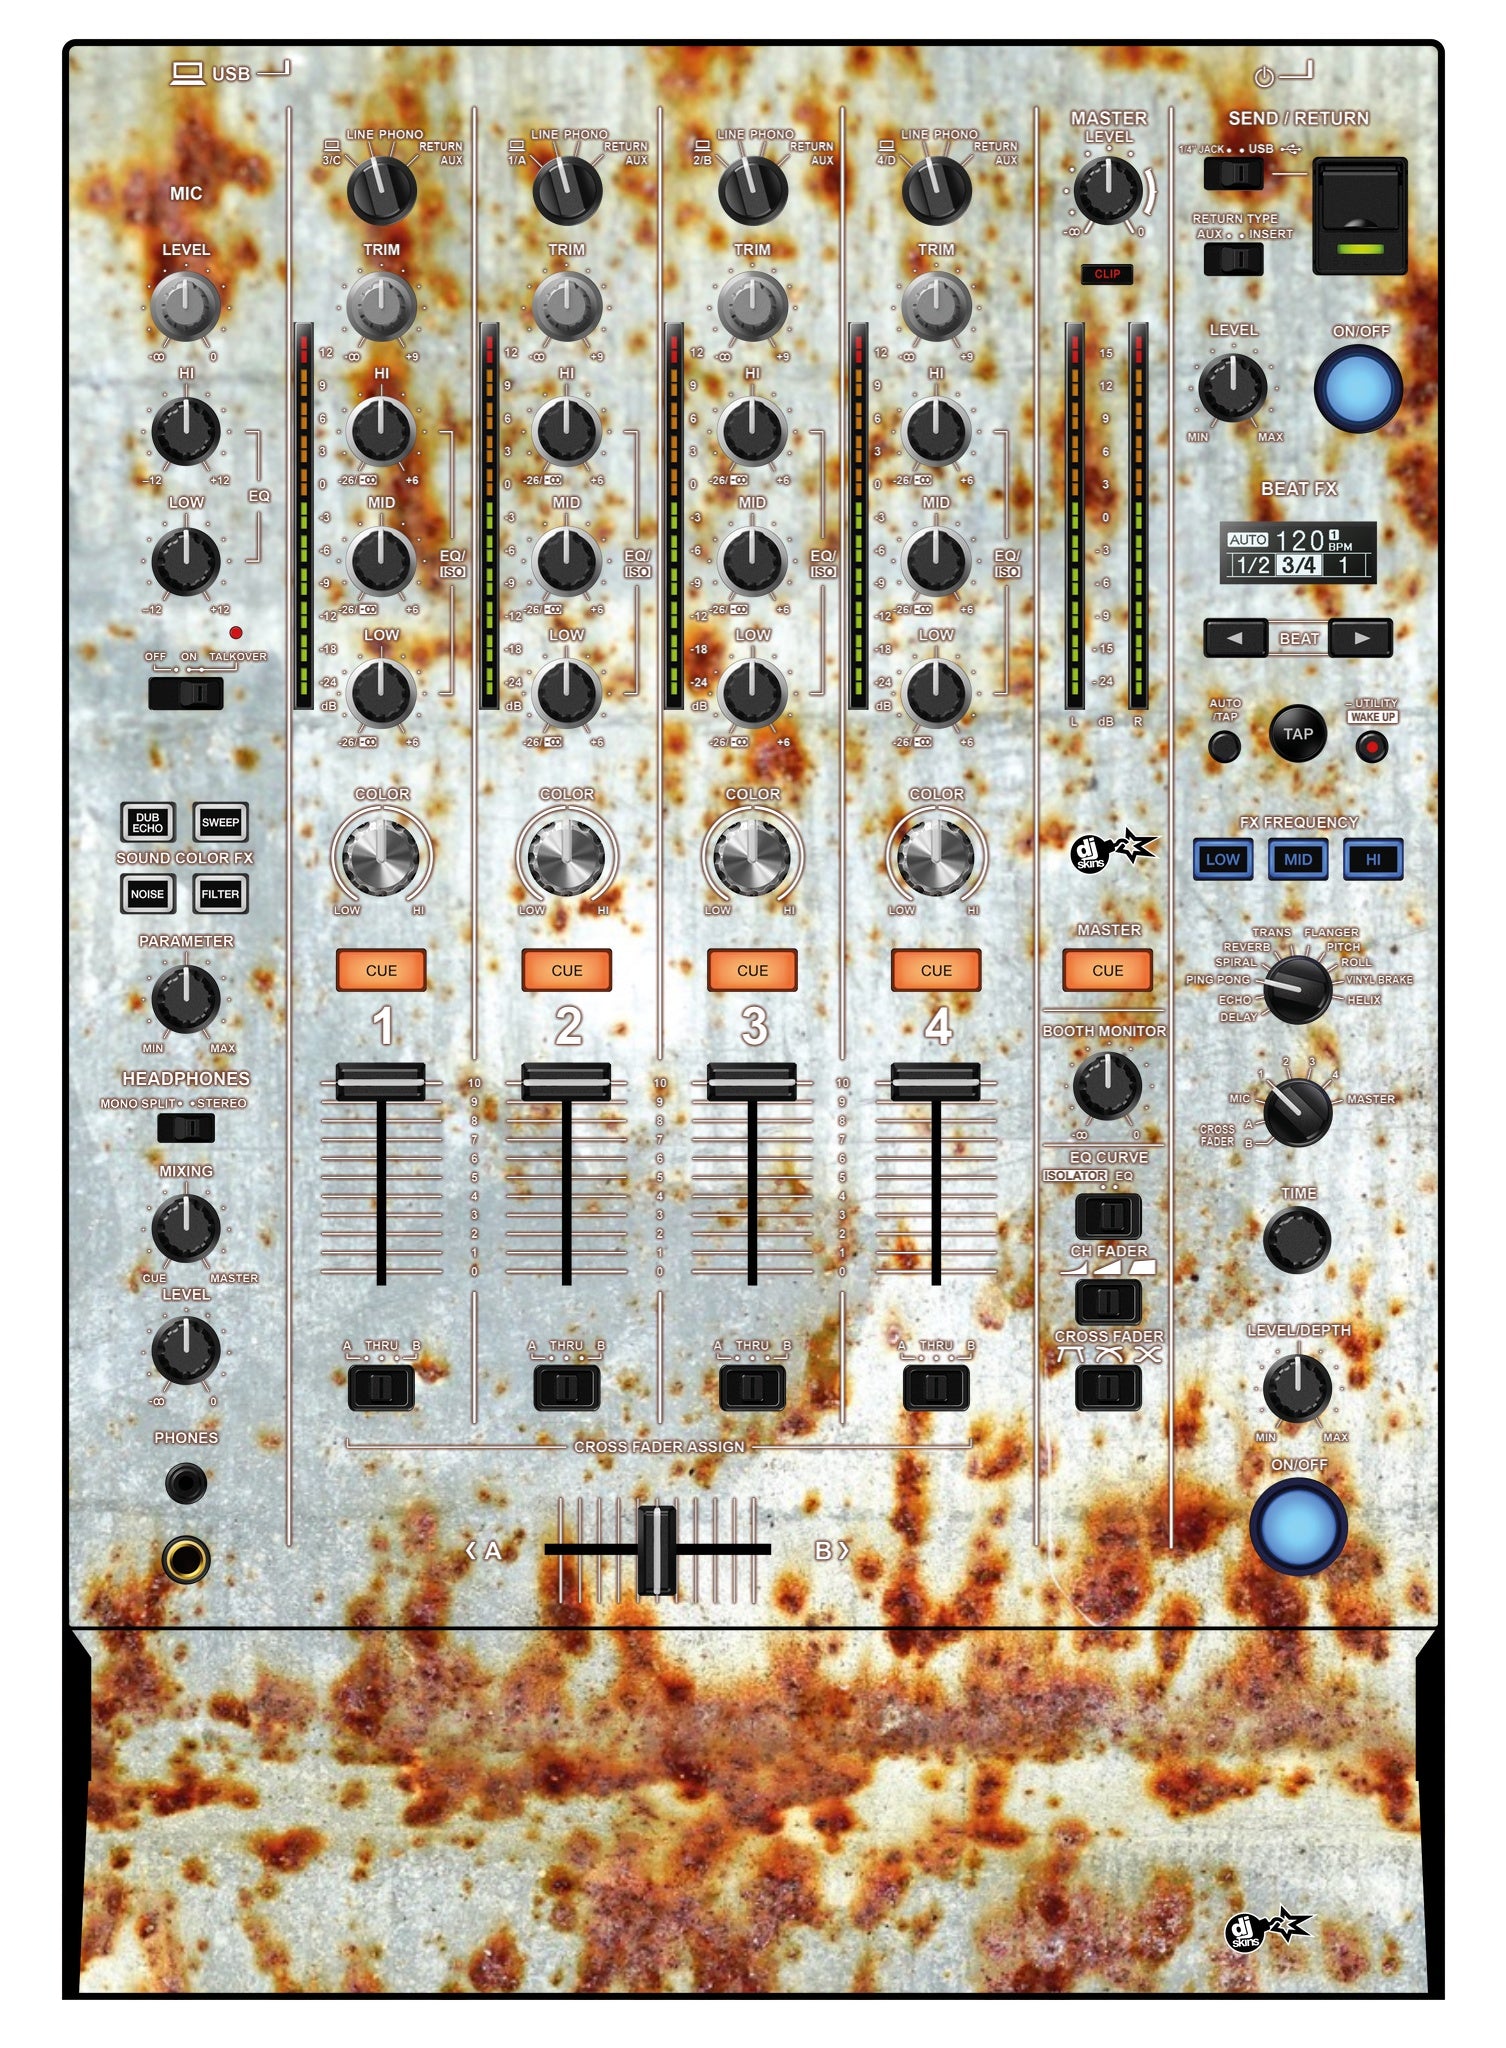 Pioneer DJ DJM 750 MK2 Skin In-Rust-Rial